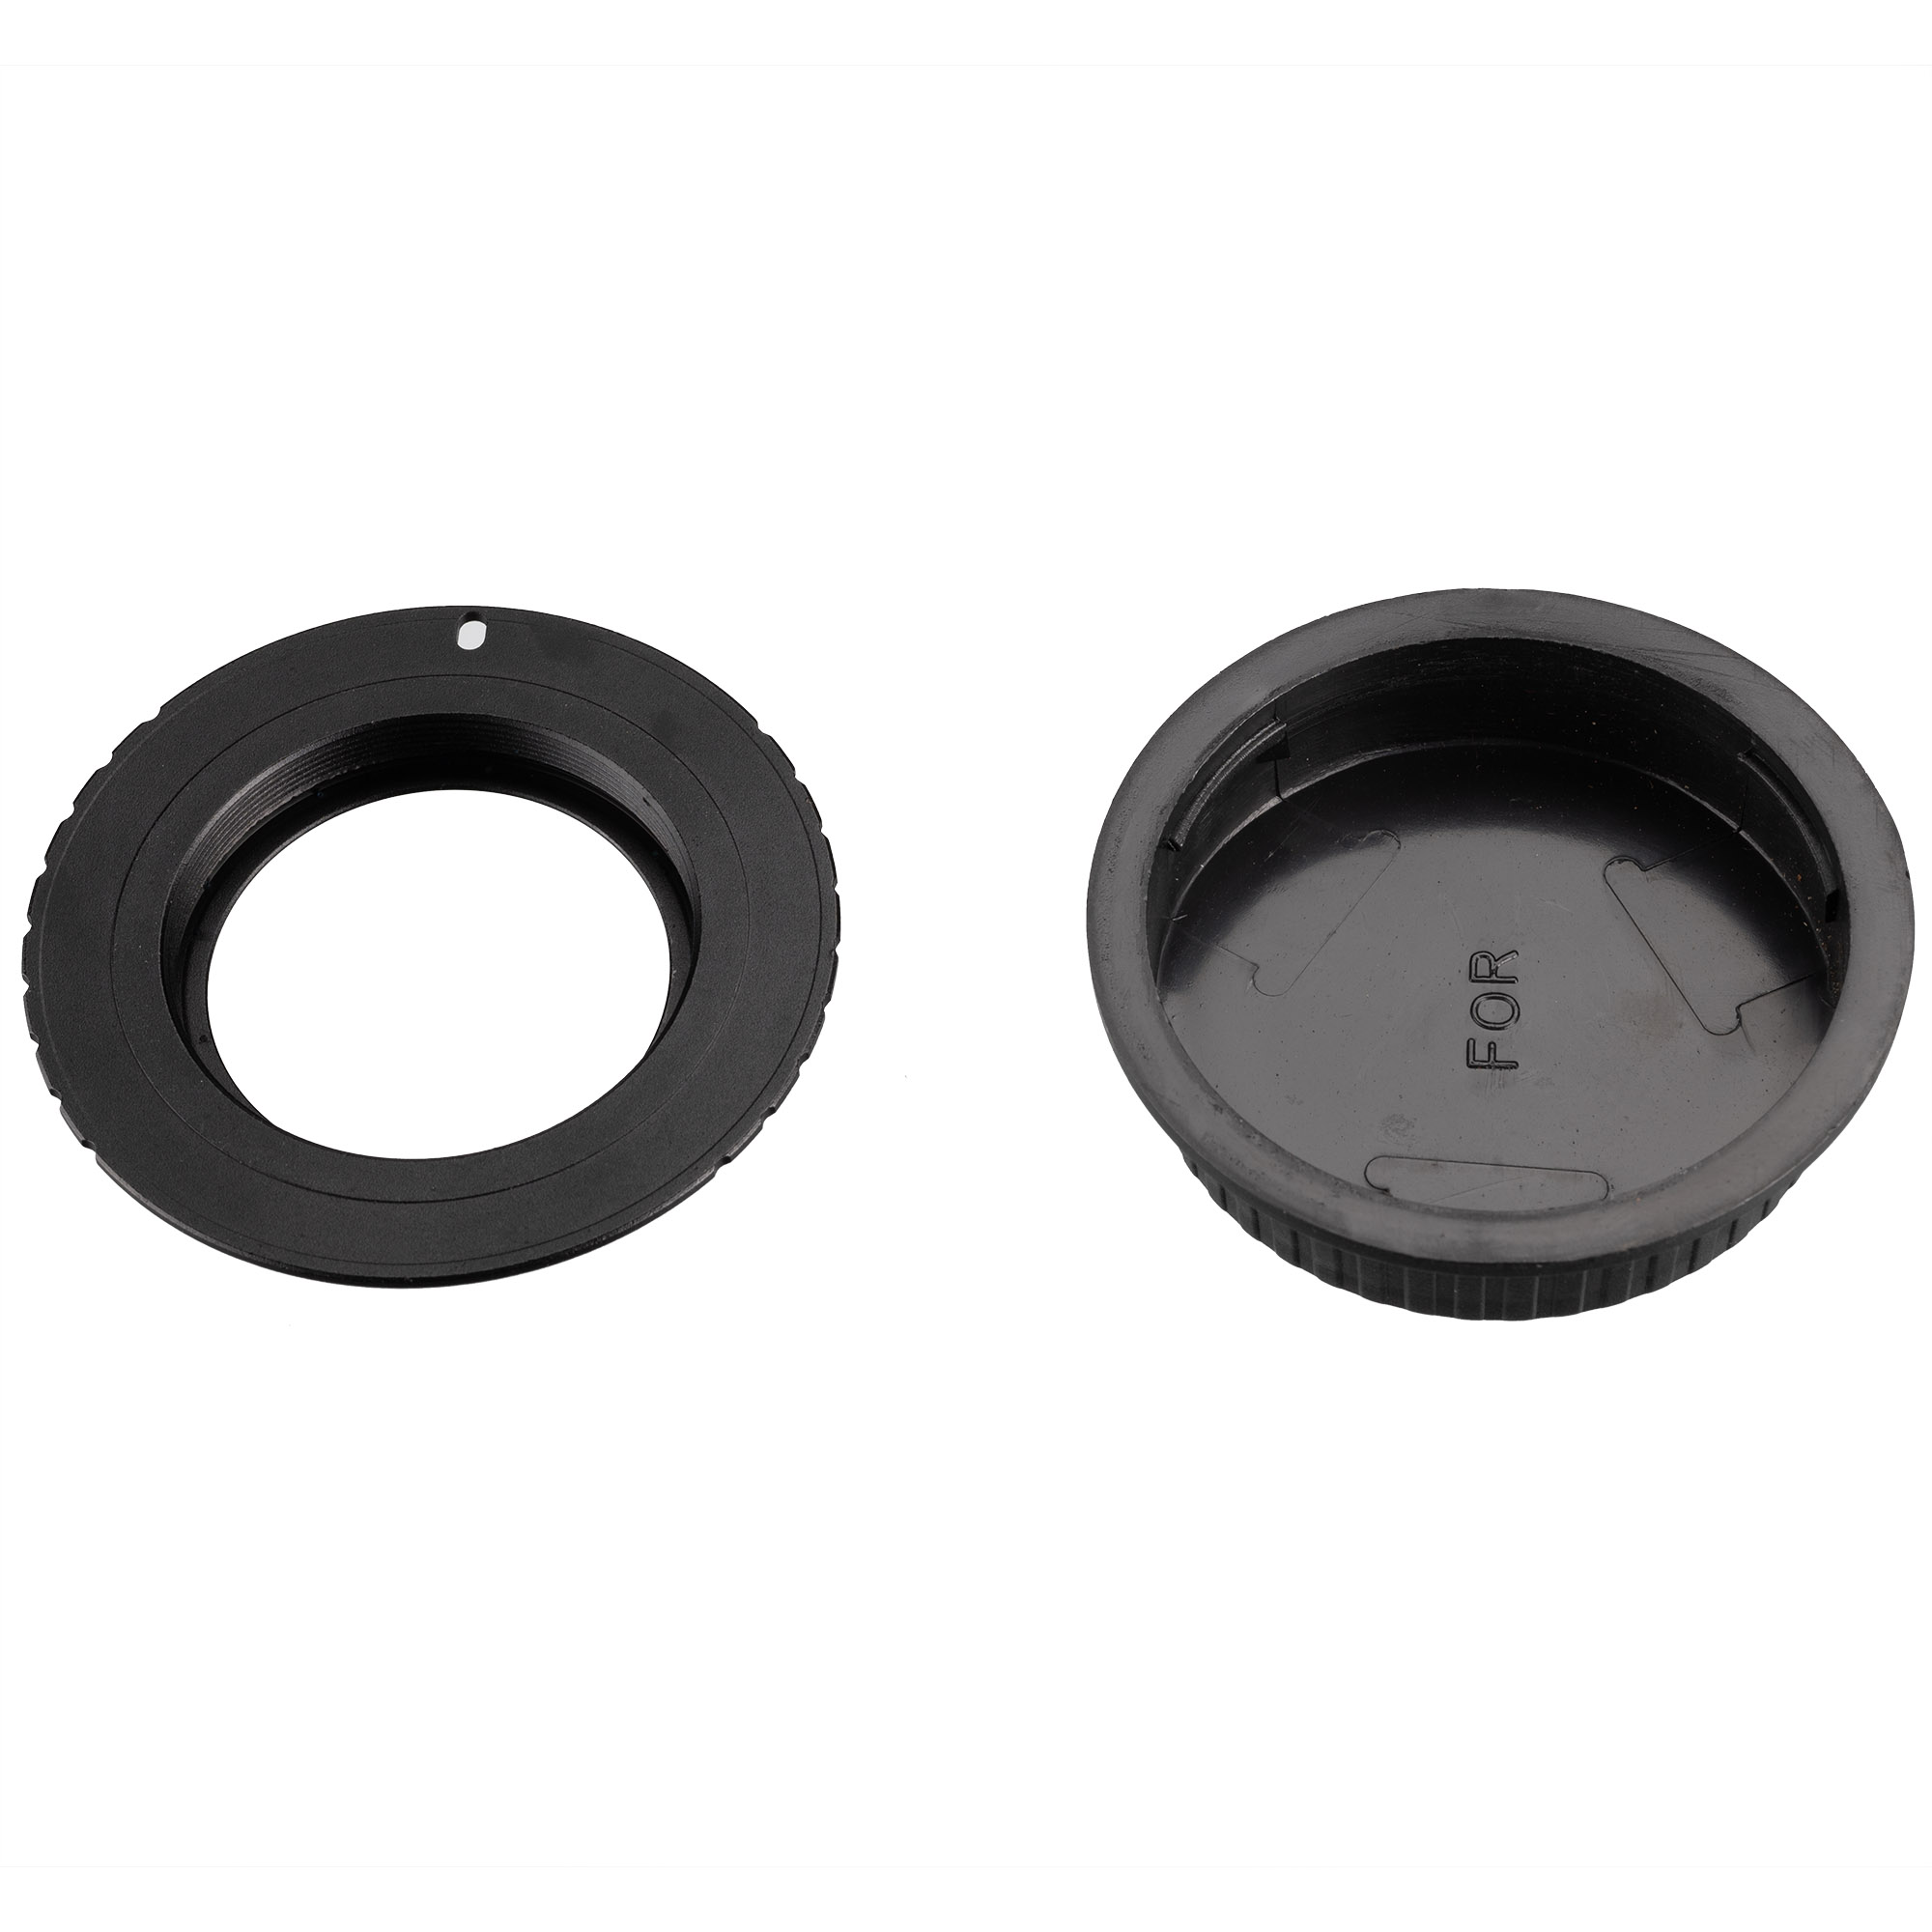 EXPLORE SCIENTIFIC Spezial T2-Ring für Canon Kameras 1,5mm Lichtweg